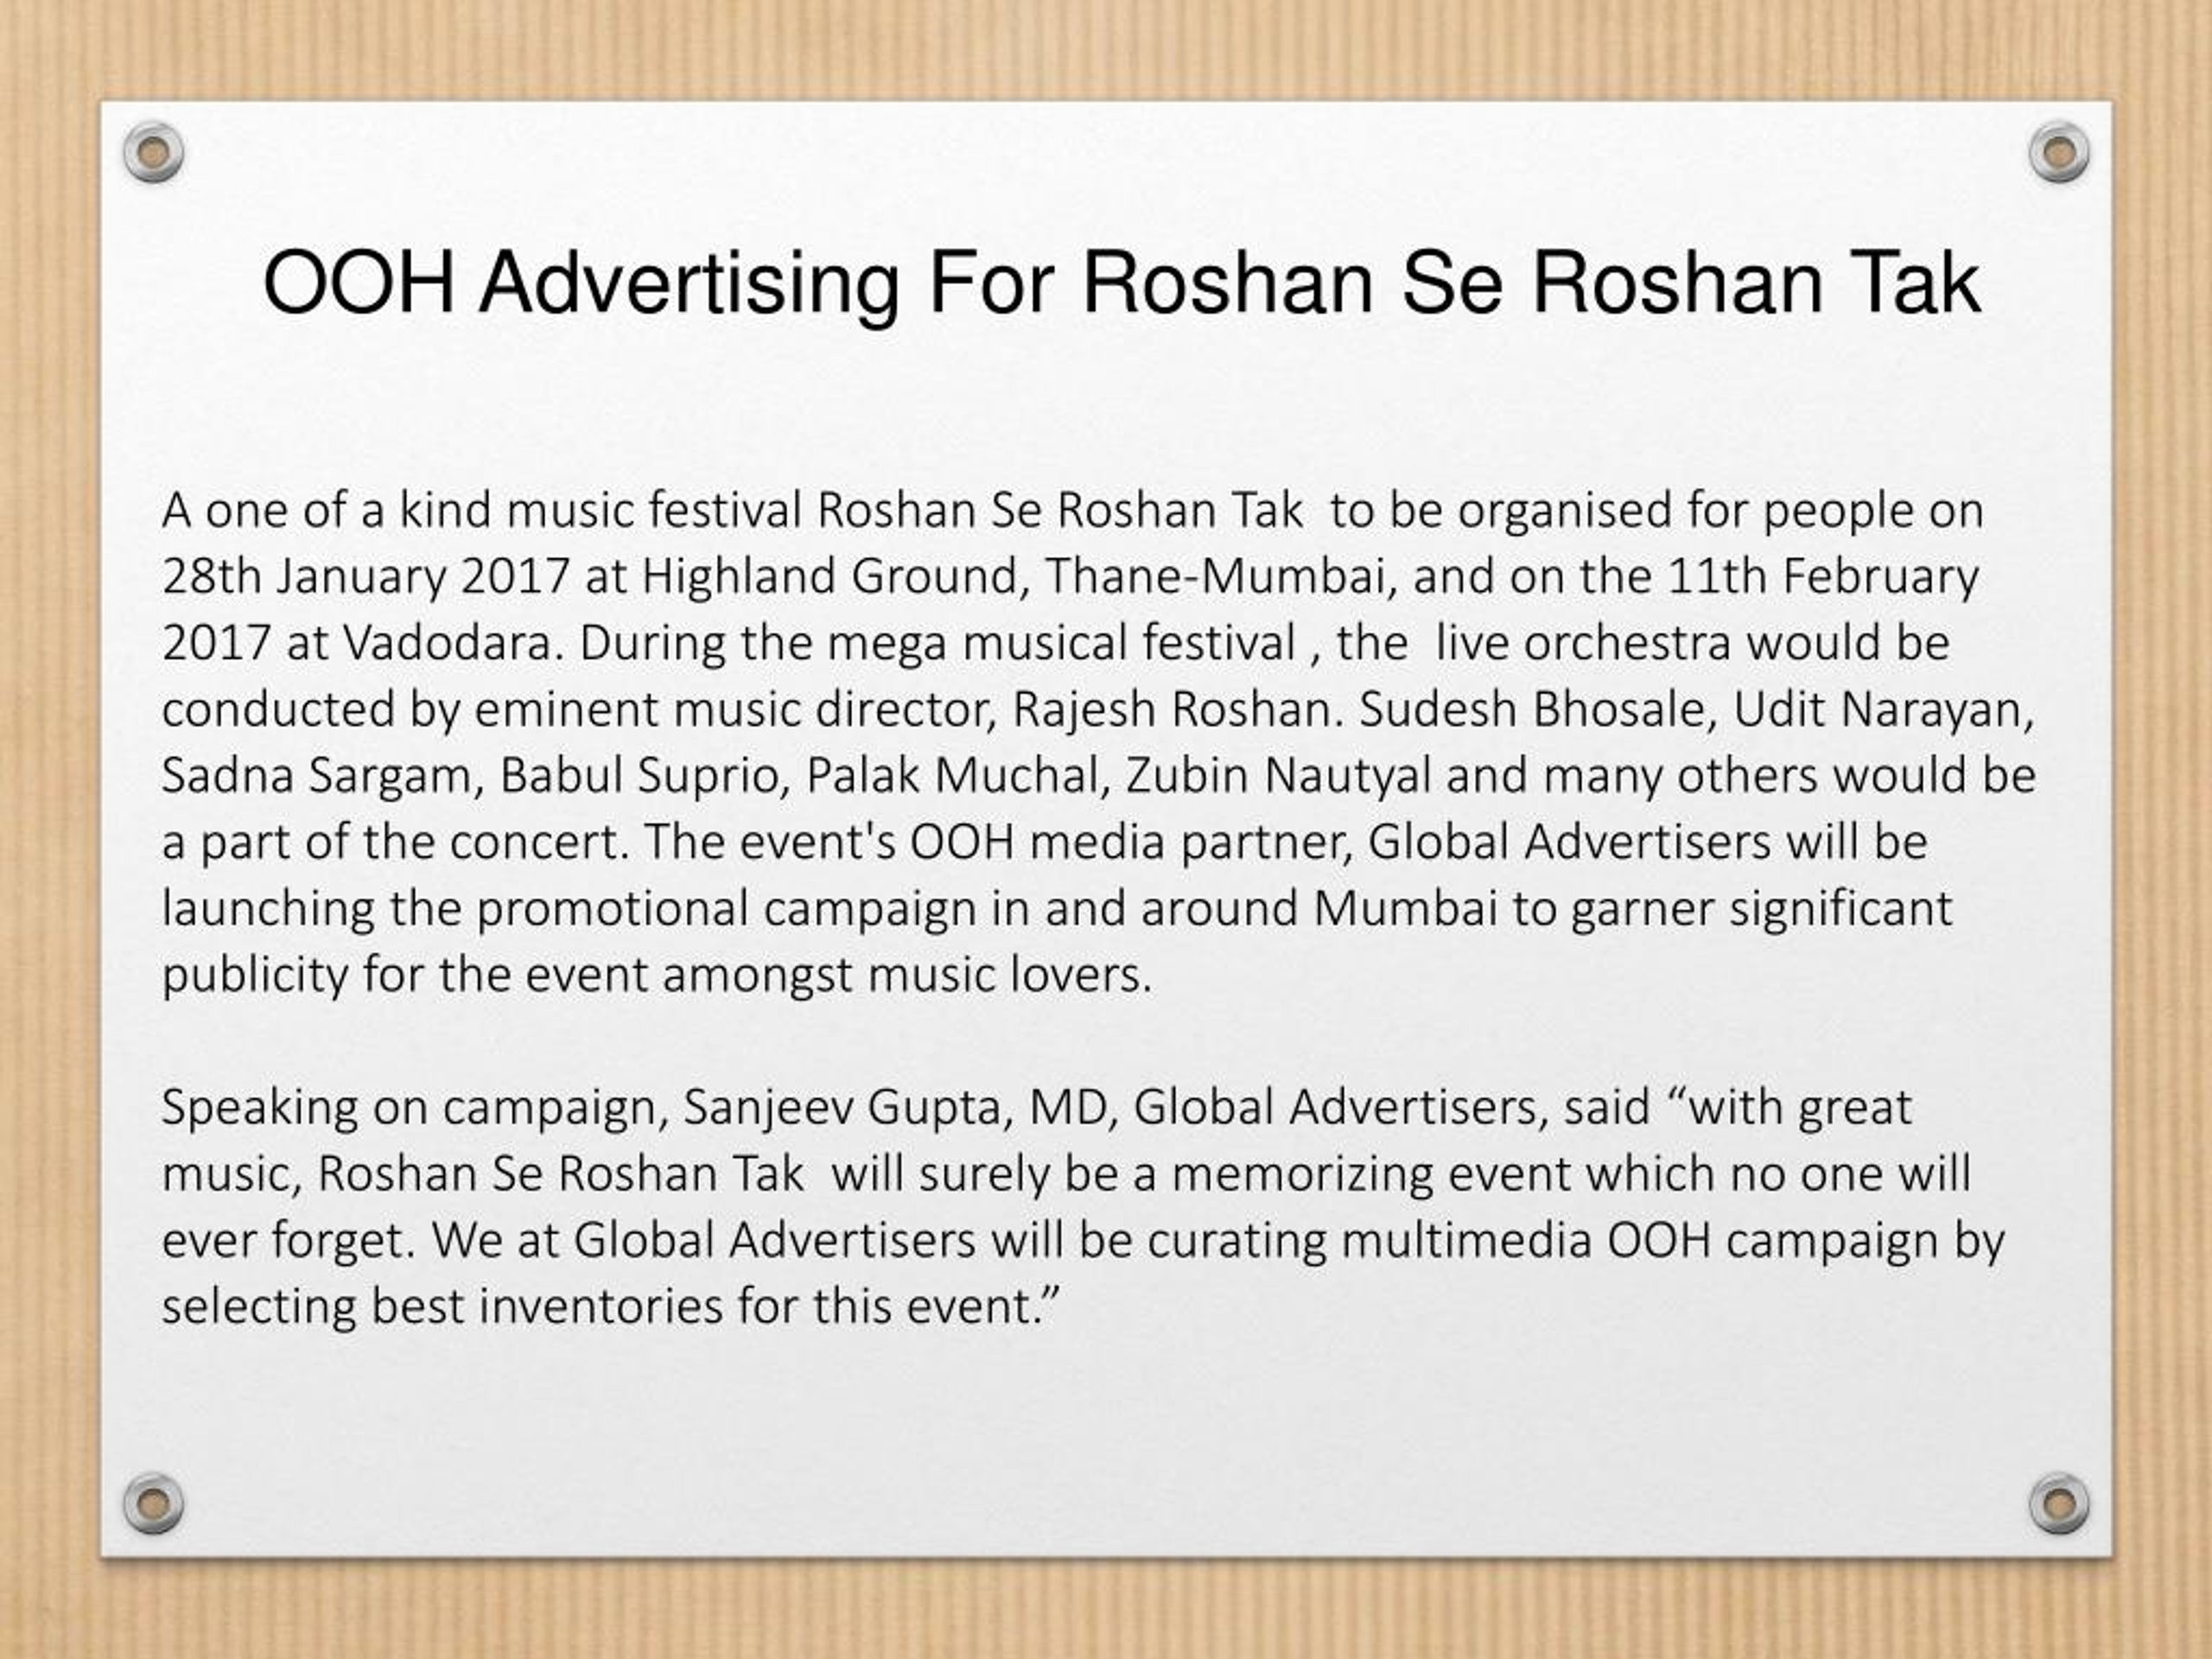 PPT - OOH Advertising For Roshan Se Roshan Tak PowerPoint ...